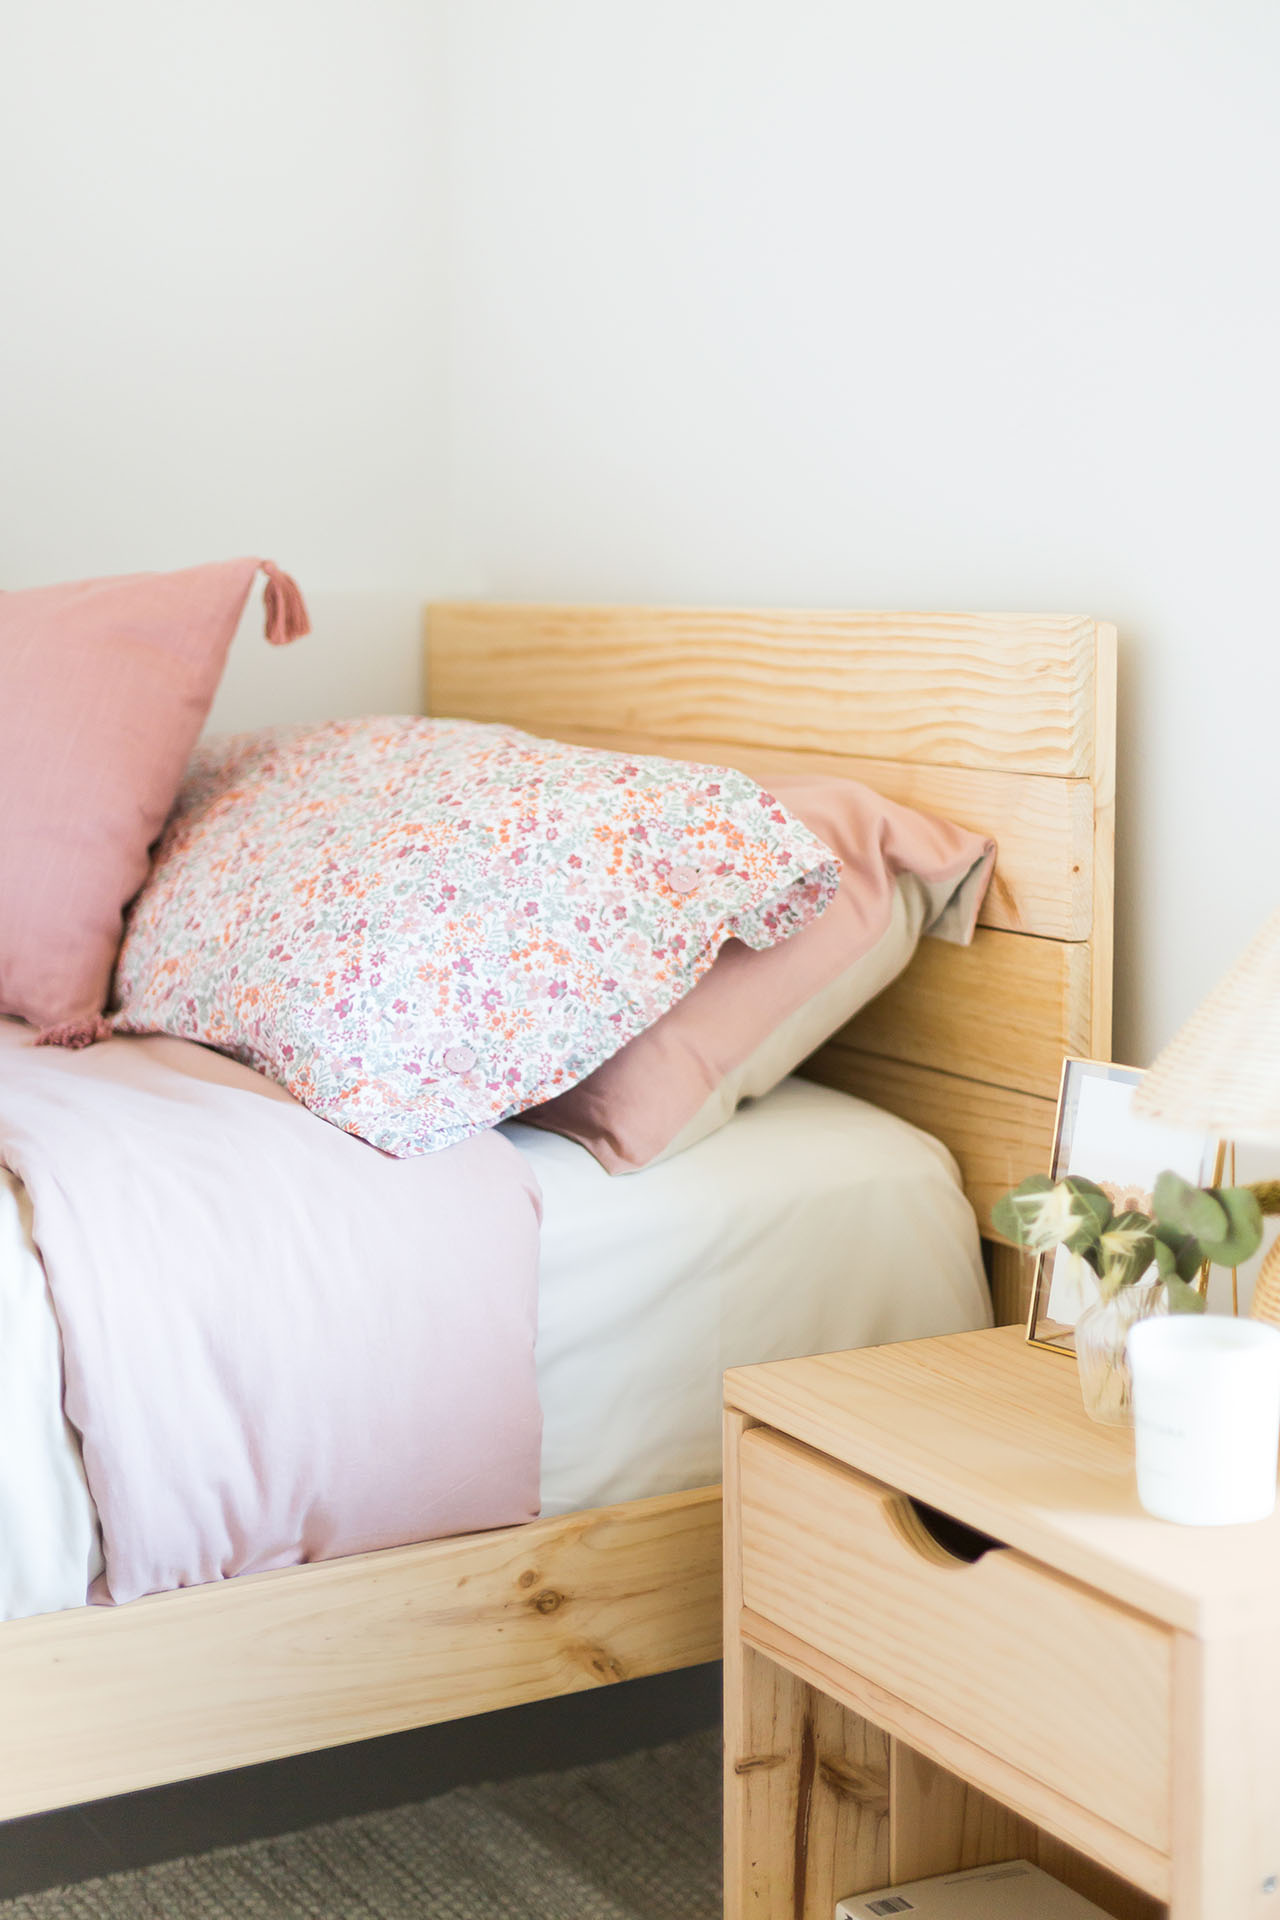 Cómo decorar tu cama para tener un dormitorio de revista - Muebles